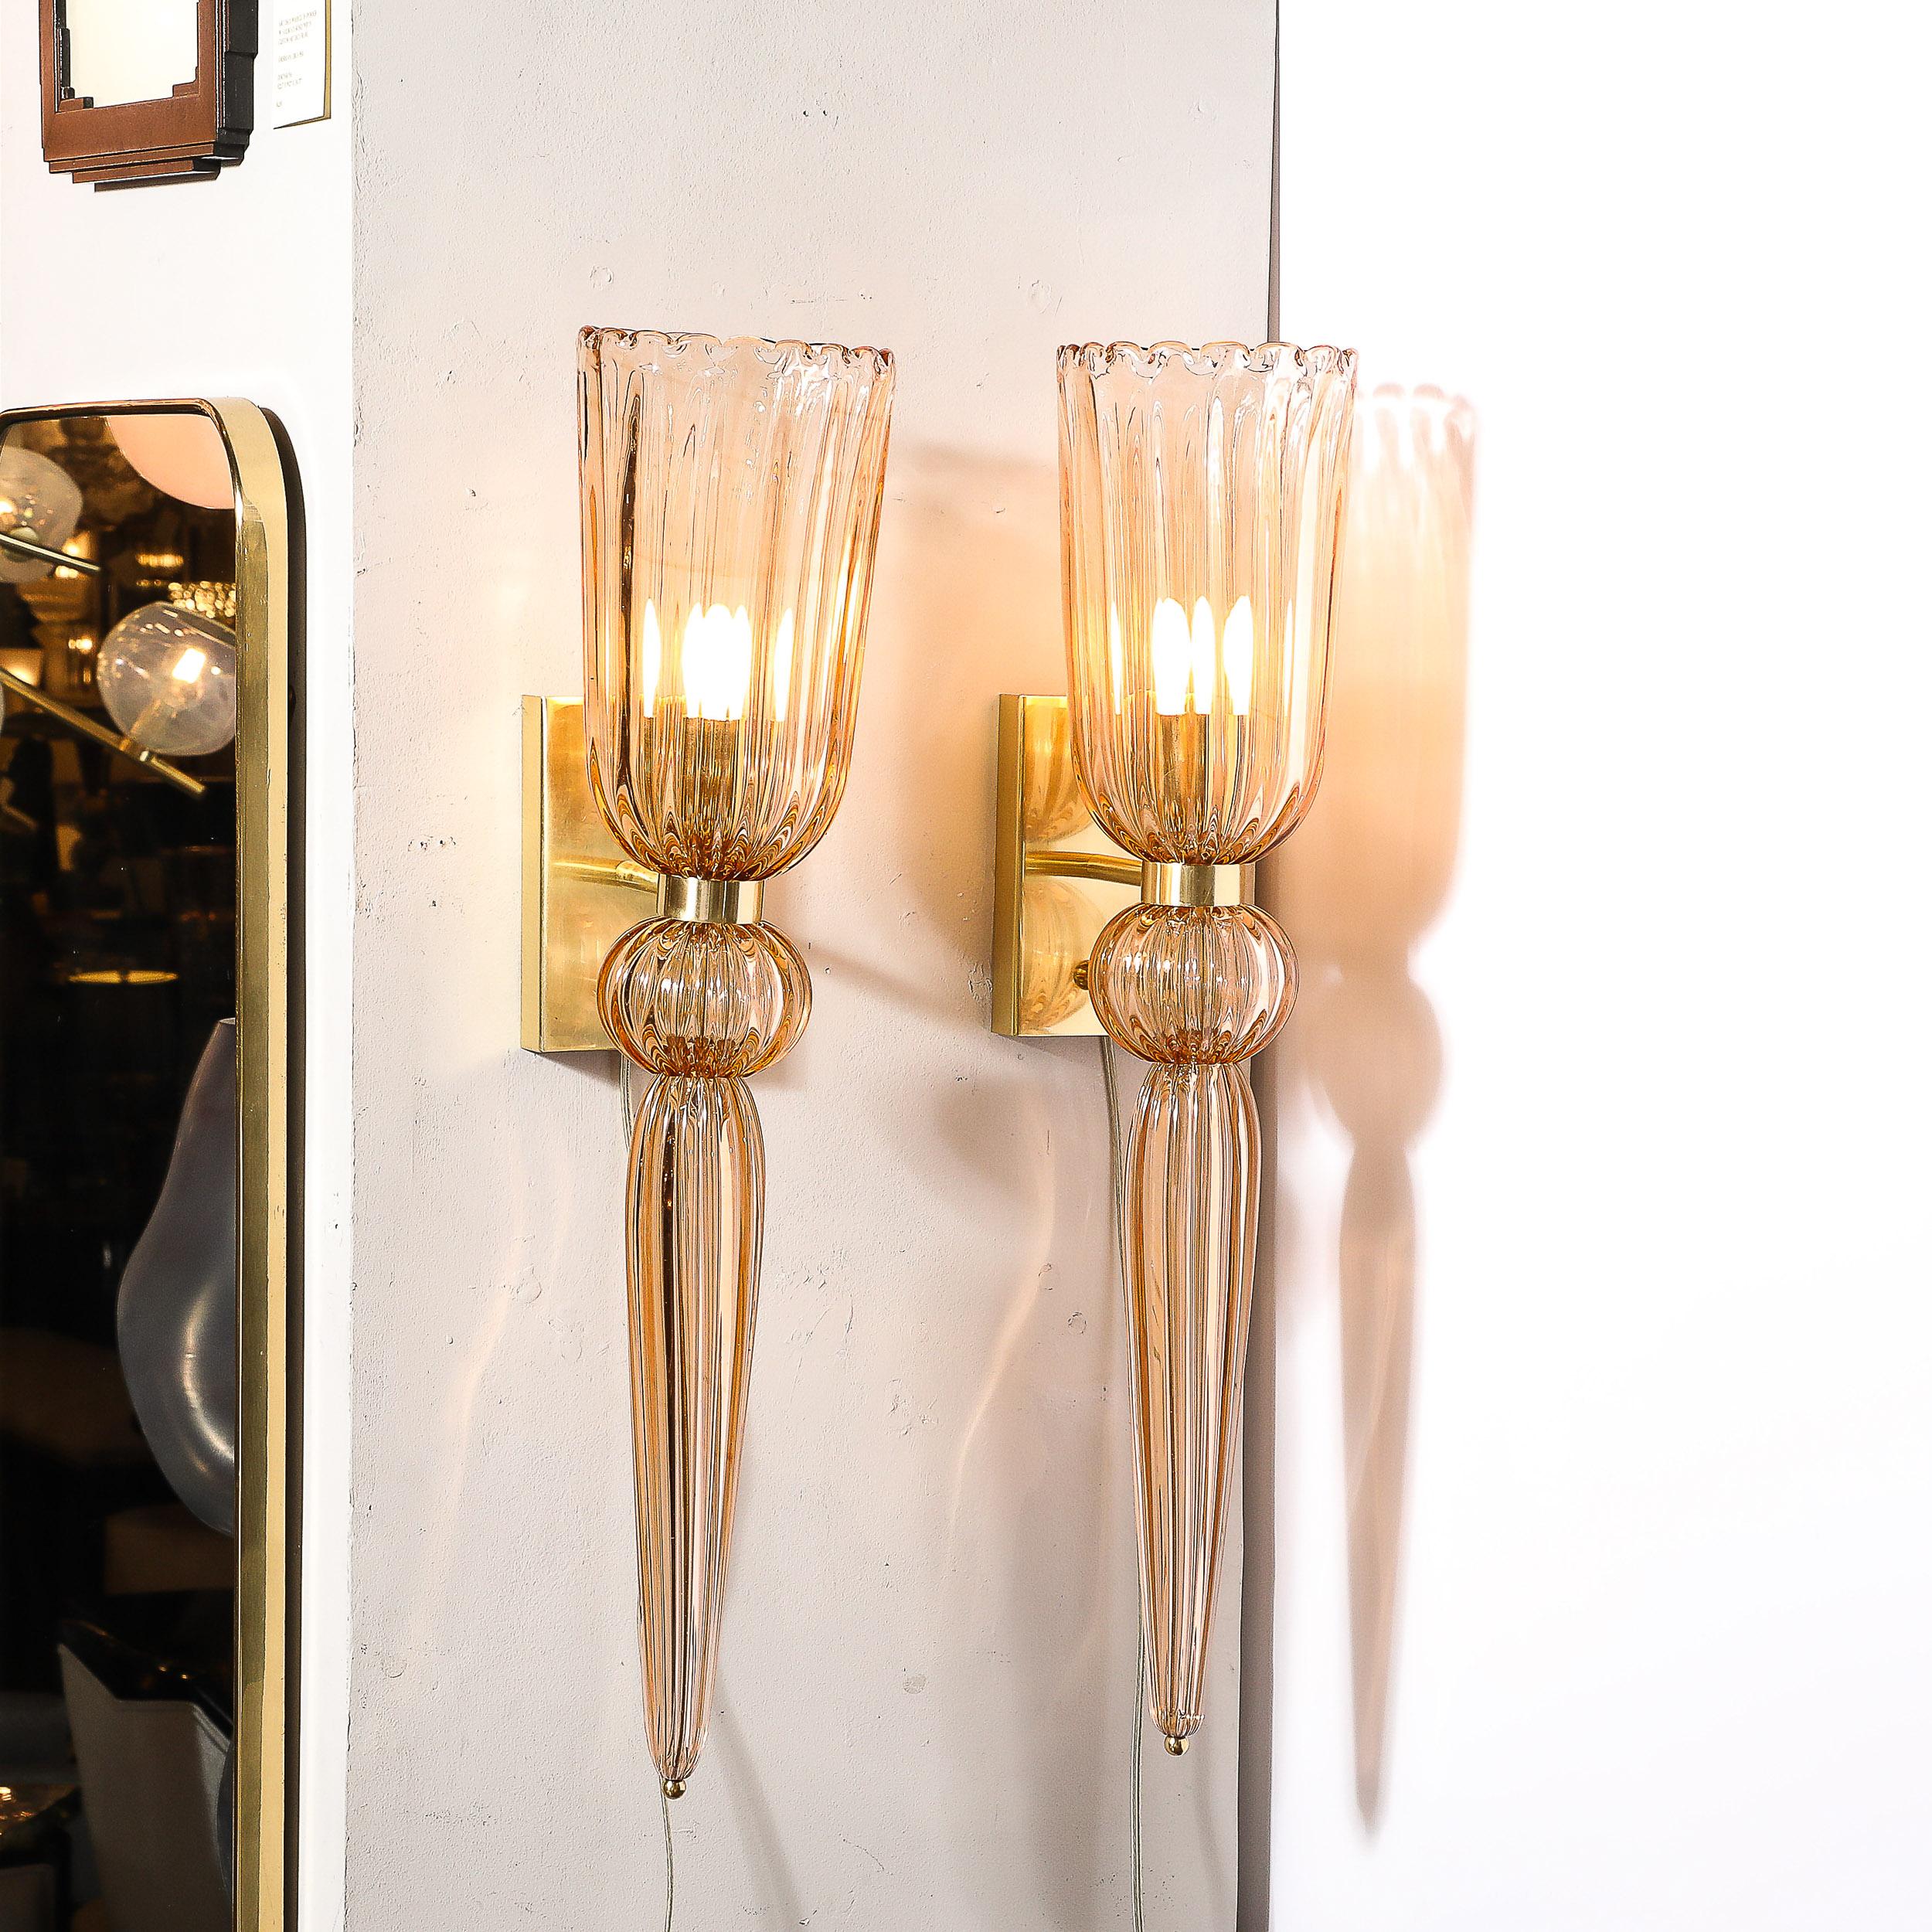 Cette paire d'appliques modernistes en verre de Murano soufflé à la main et en laiton, avec une goutte allongée, est originaire d'Italie et date du 21e siècle. Elle présente une belle forme allongée avec des détails cannelés à travers les divers